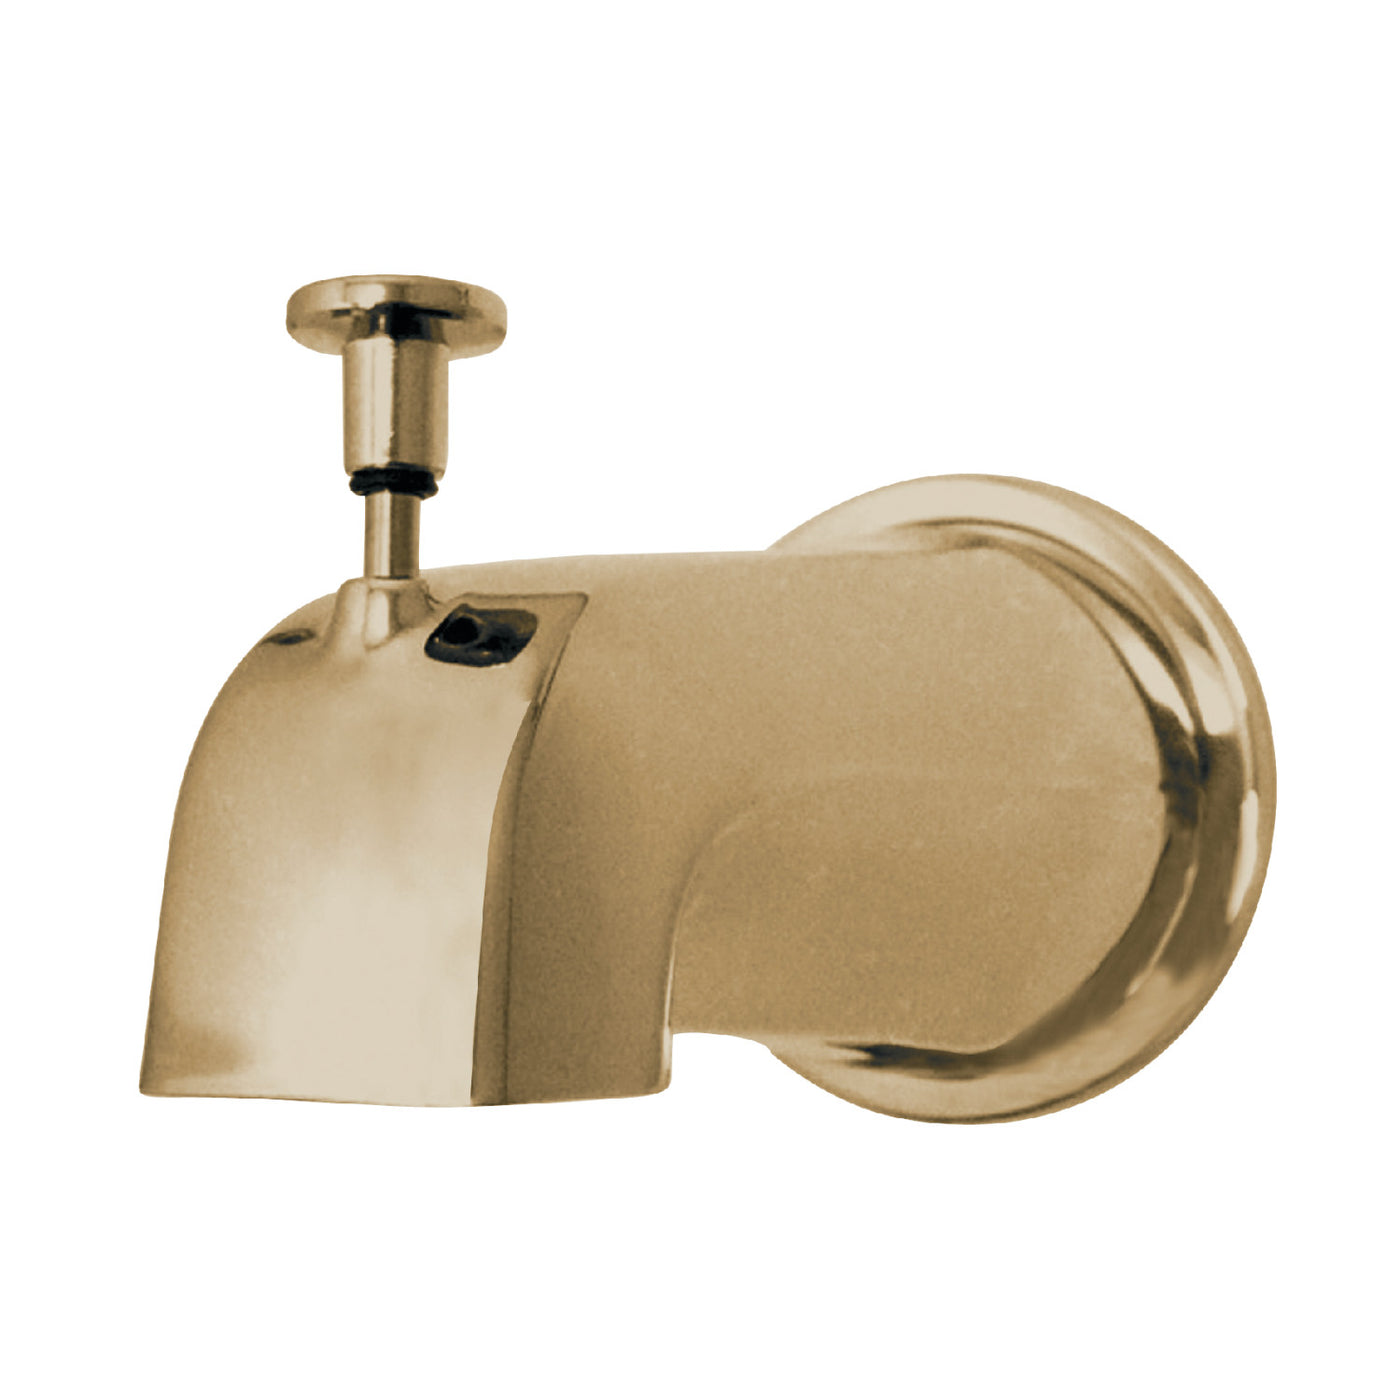 Elements of Design DK188E2 Diverter Tub Spout with Flange, Polished Brass